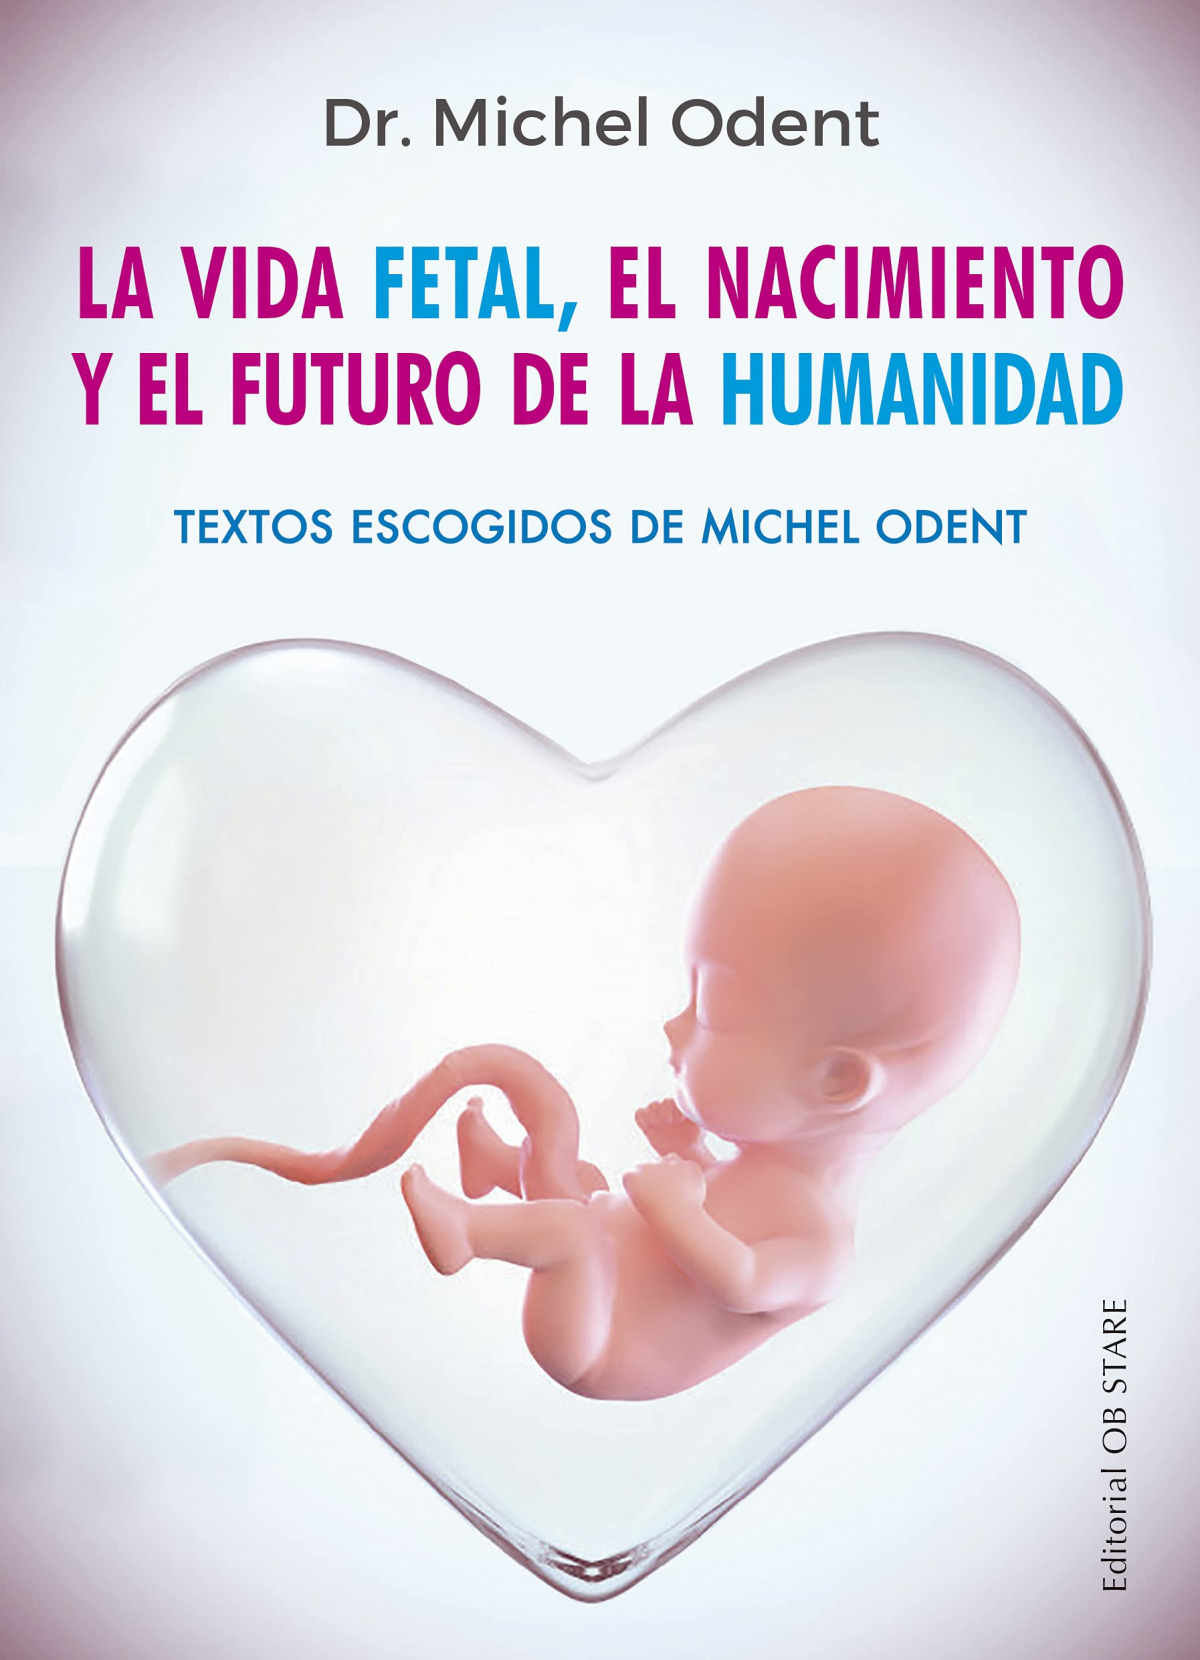 La vida fetal, el nacimiento y el futuro de la humanidad - Odent, Dr. Michel